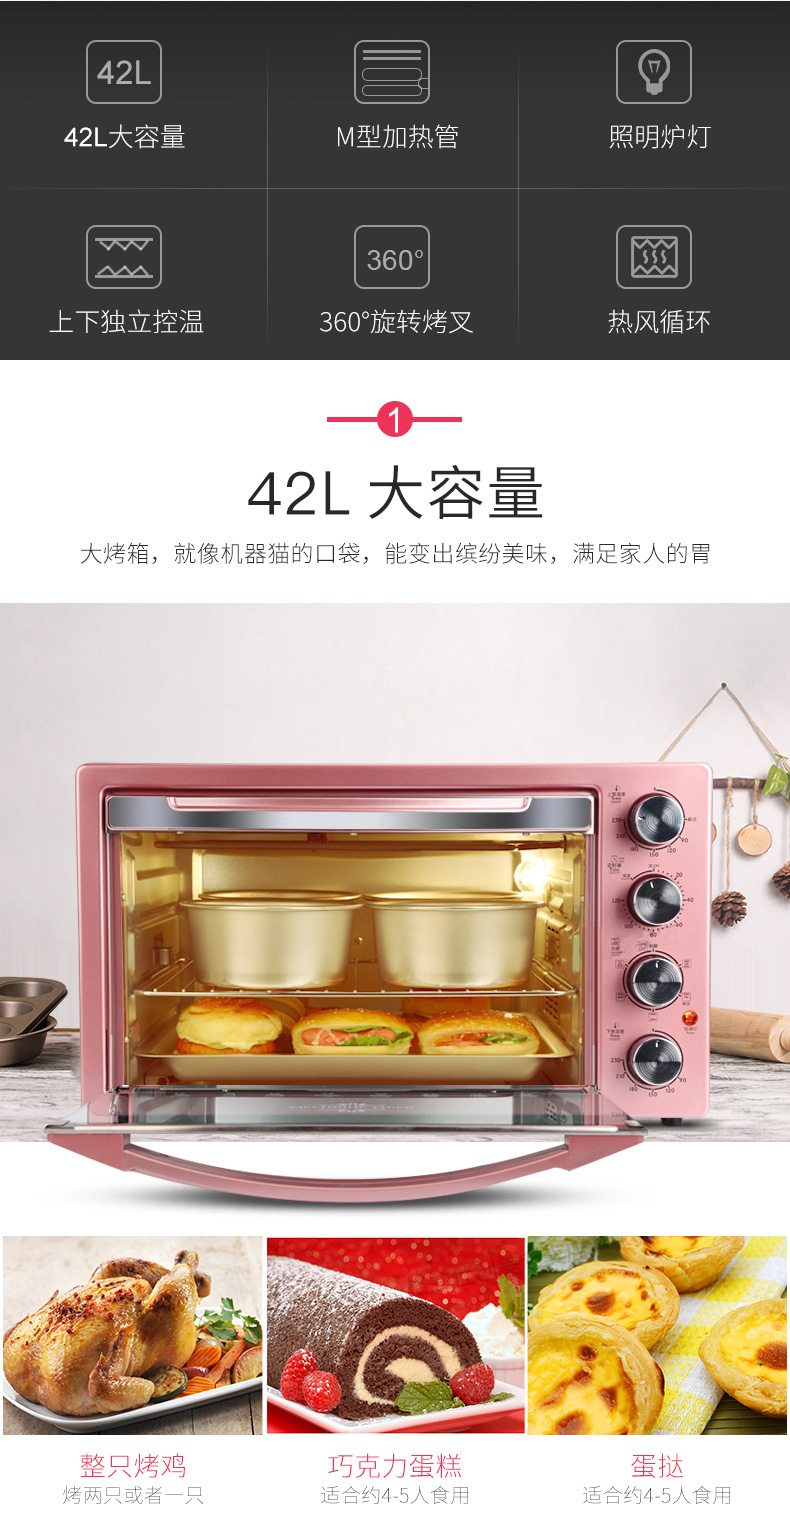 Galanz/格兰仕 X1R家用烤炉电烤箱烘焙智能全自动42升大容量